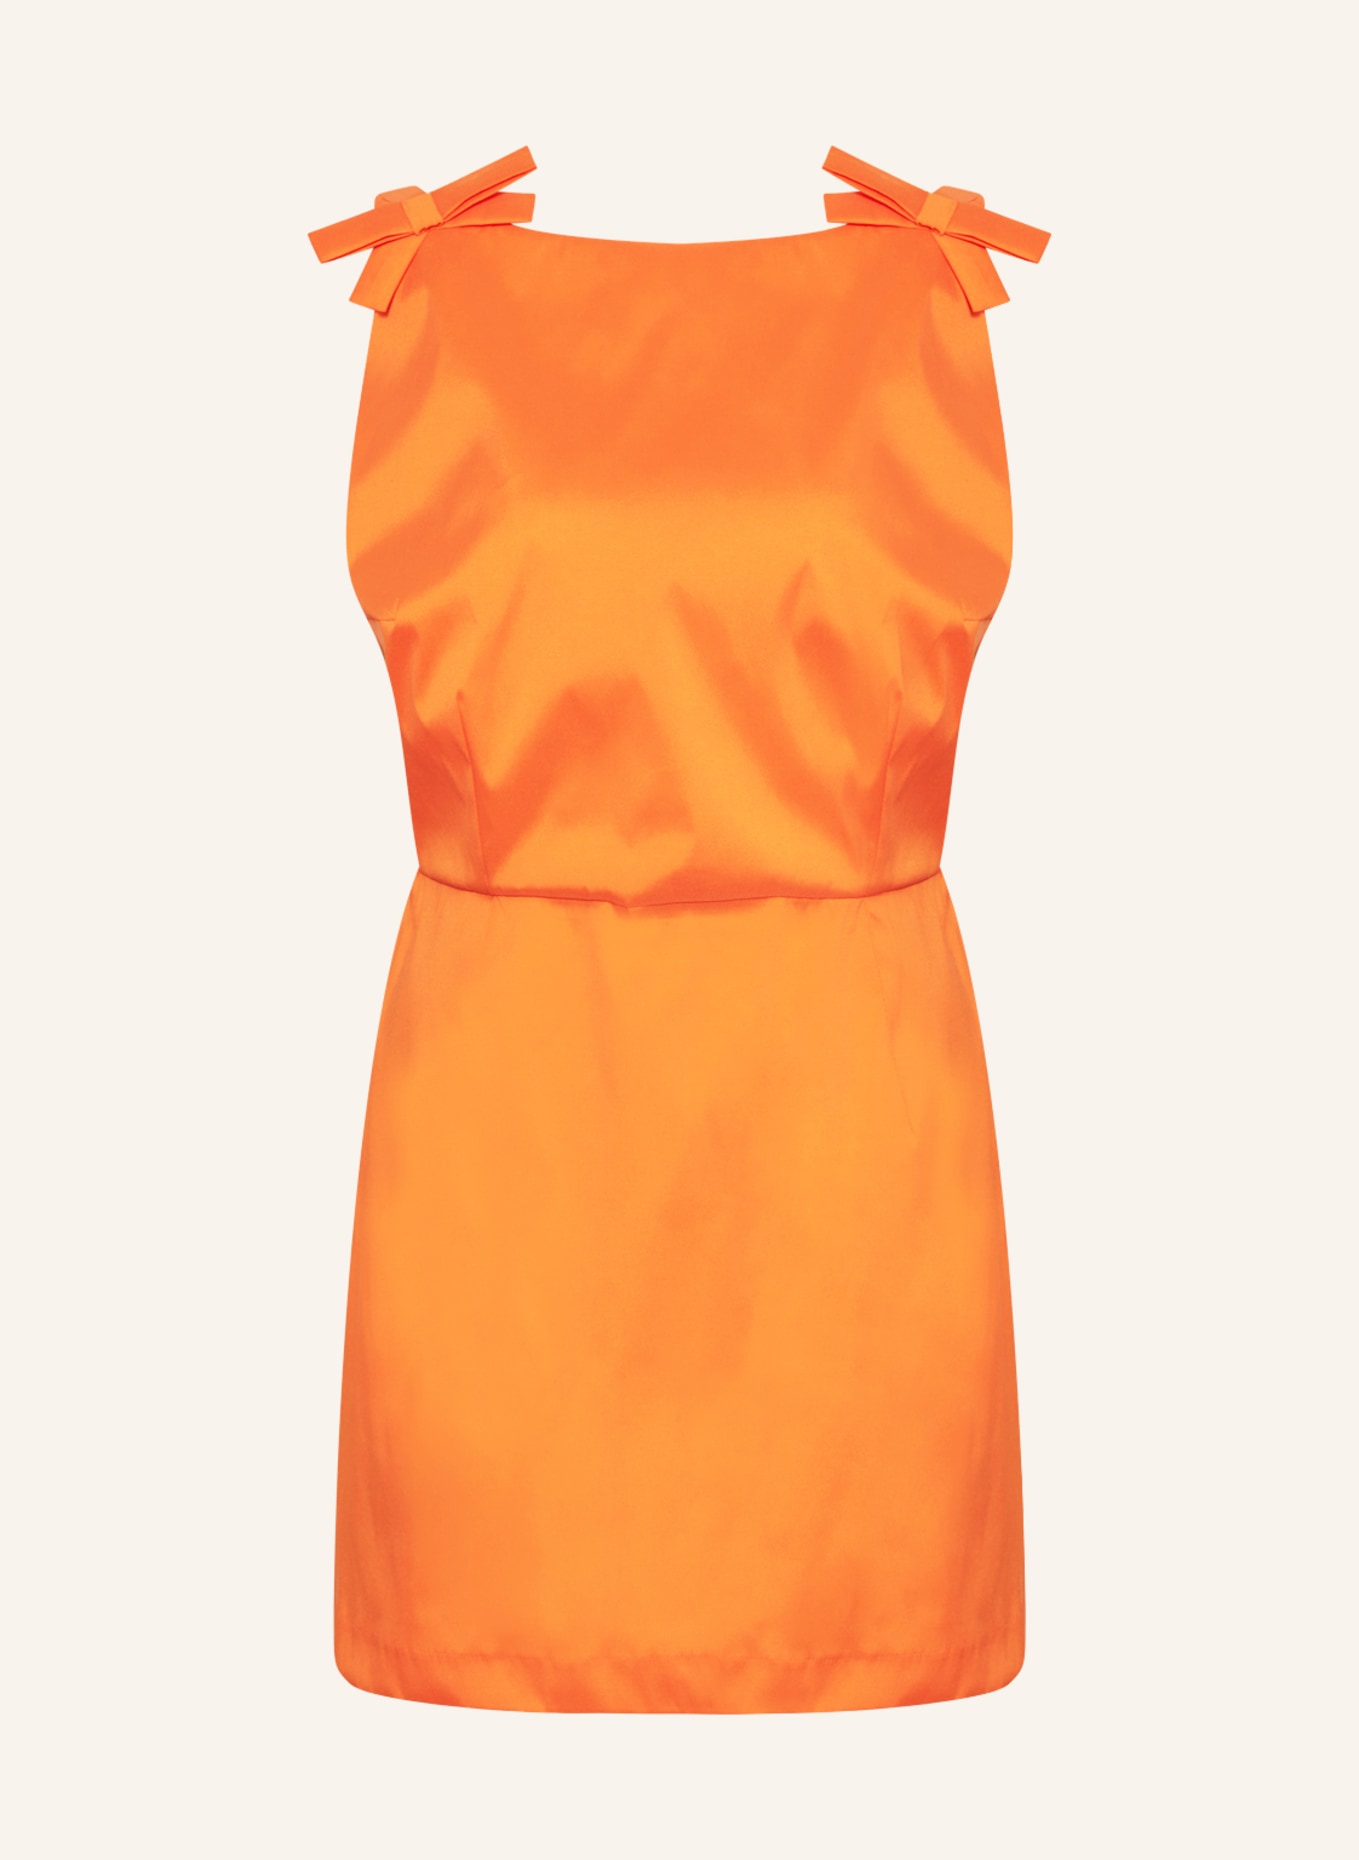 BERNADETTE Dress KIM with cut-out, Color: ORANGE (Image 1)